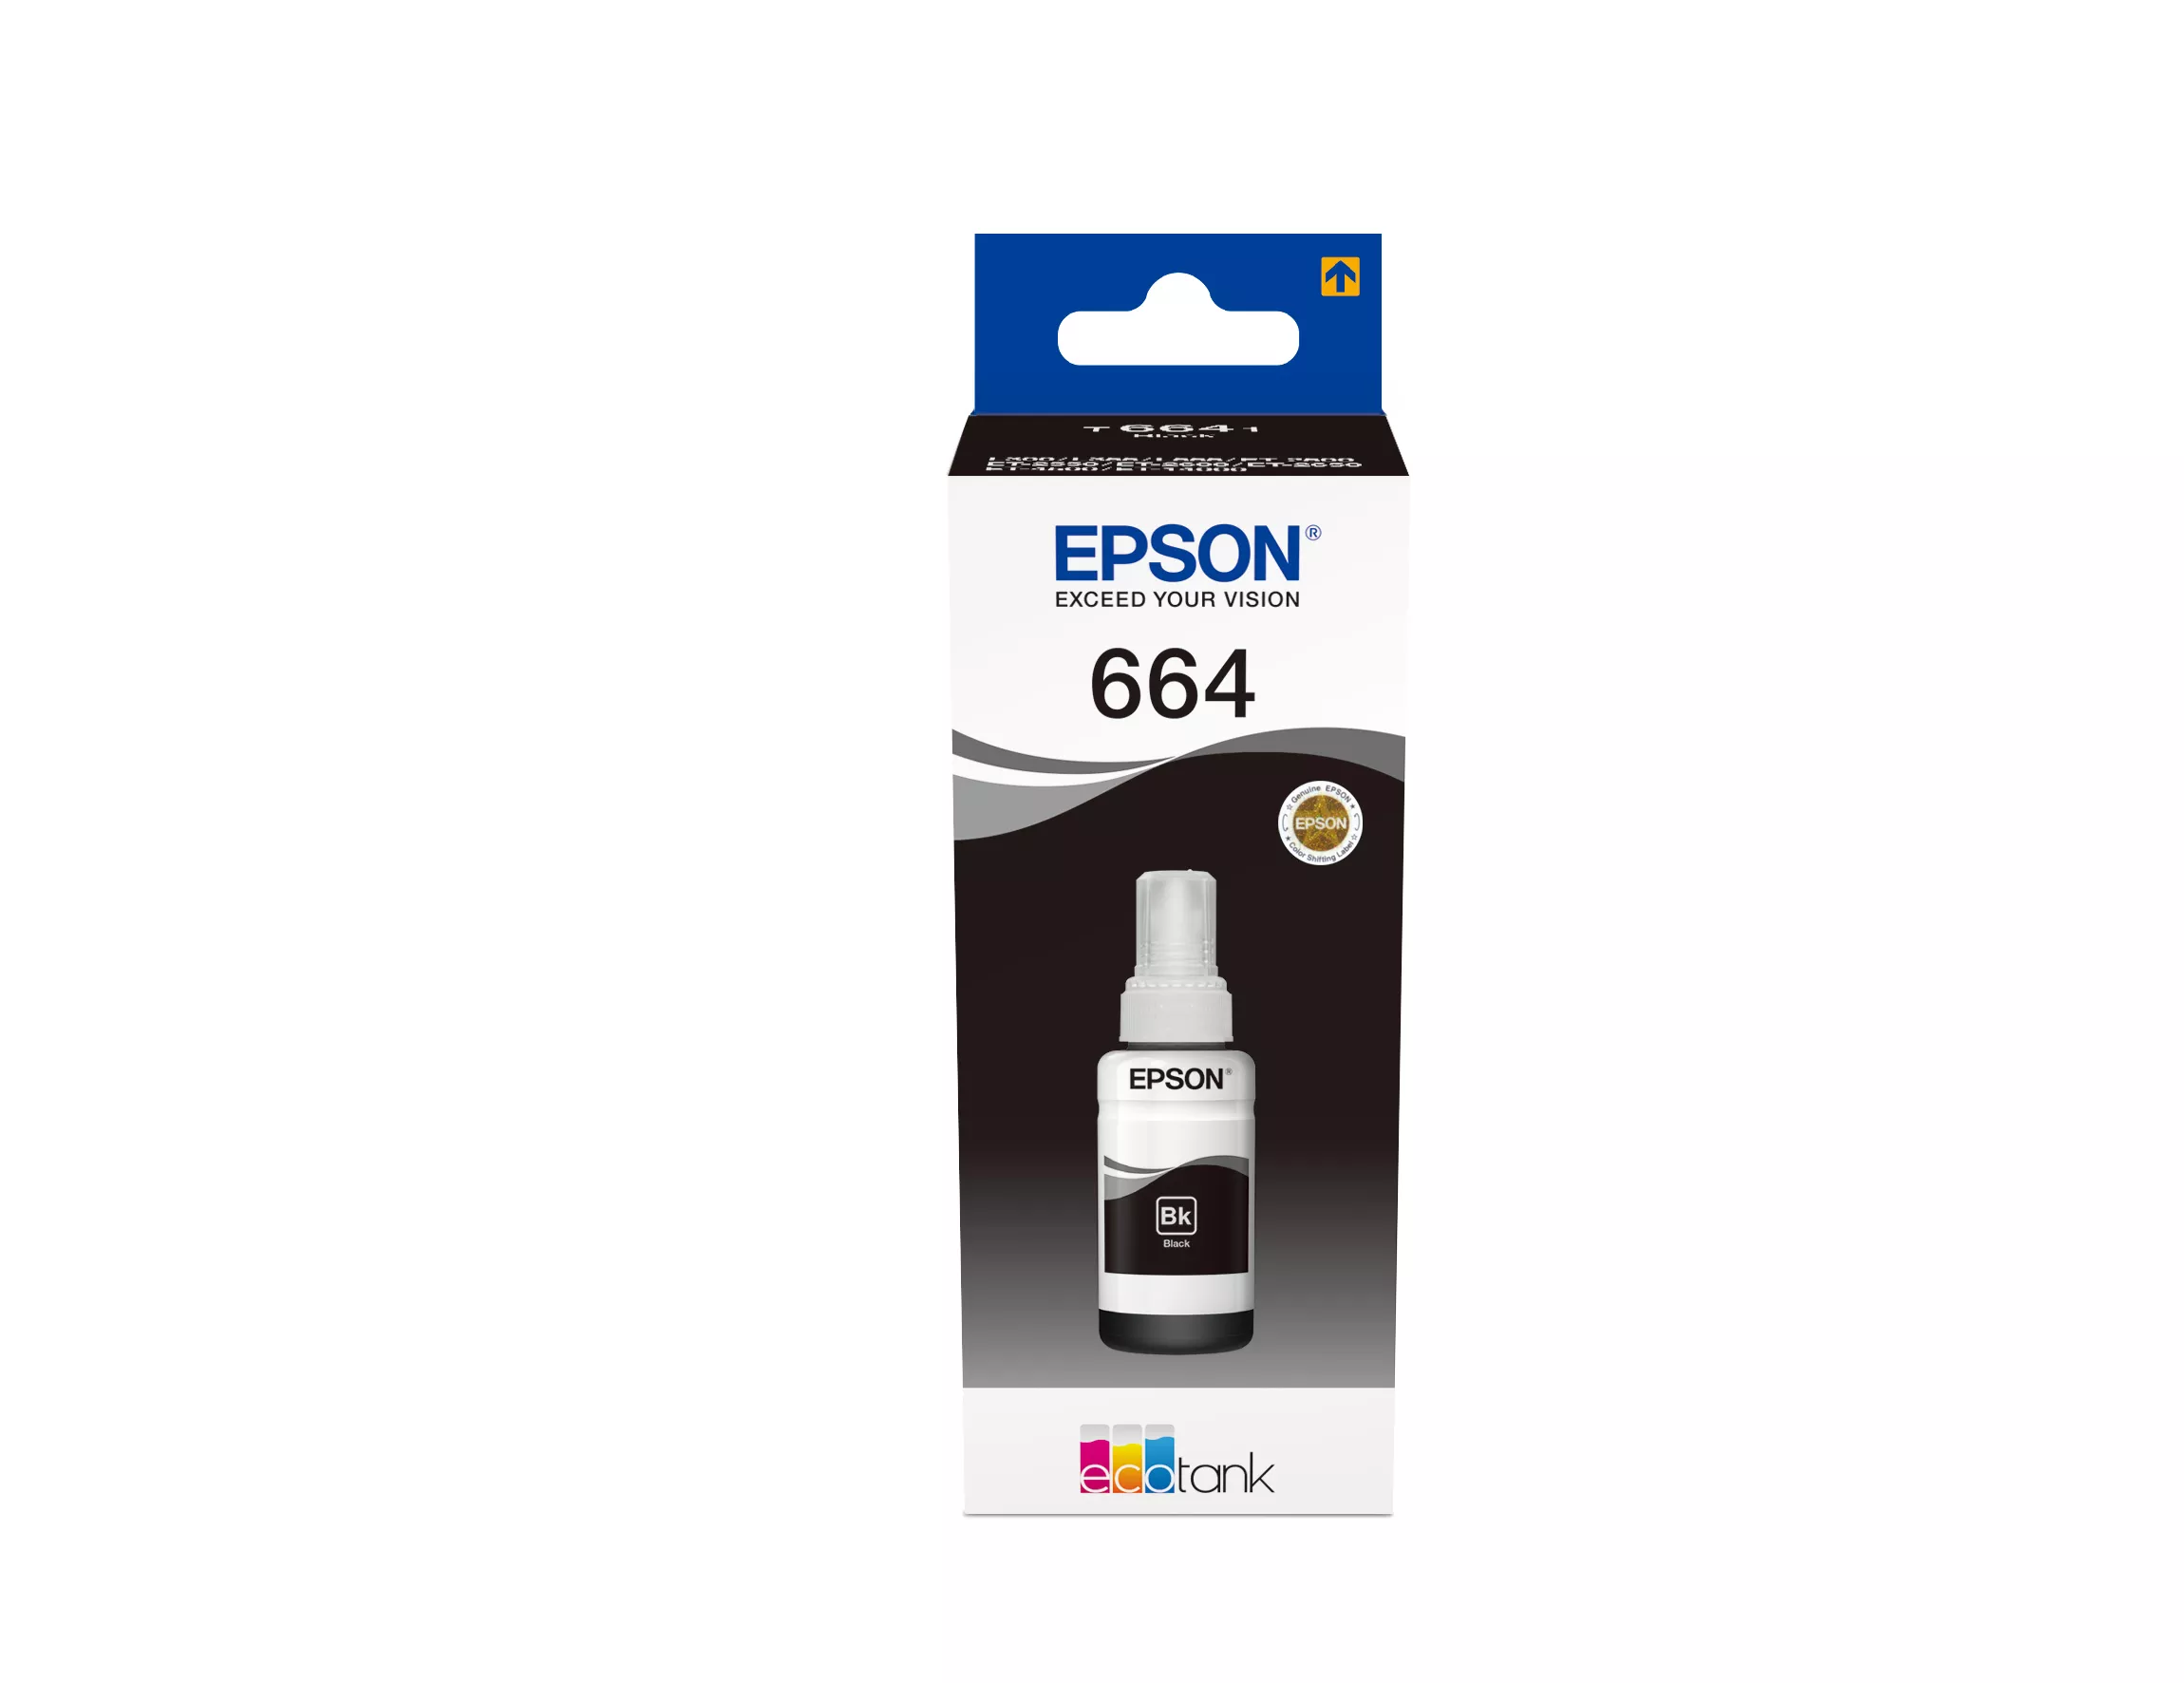 Achat EPSON T6641 cartouche d encre noir 70ml pack de 1 au meilleur prix